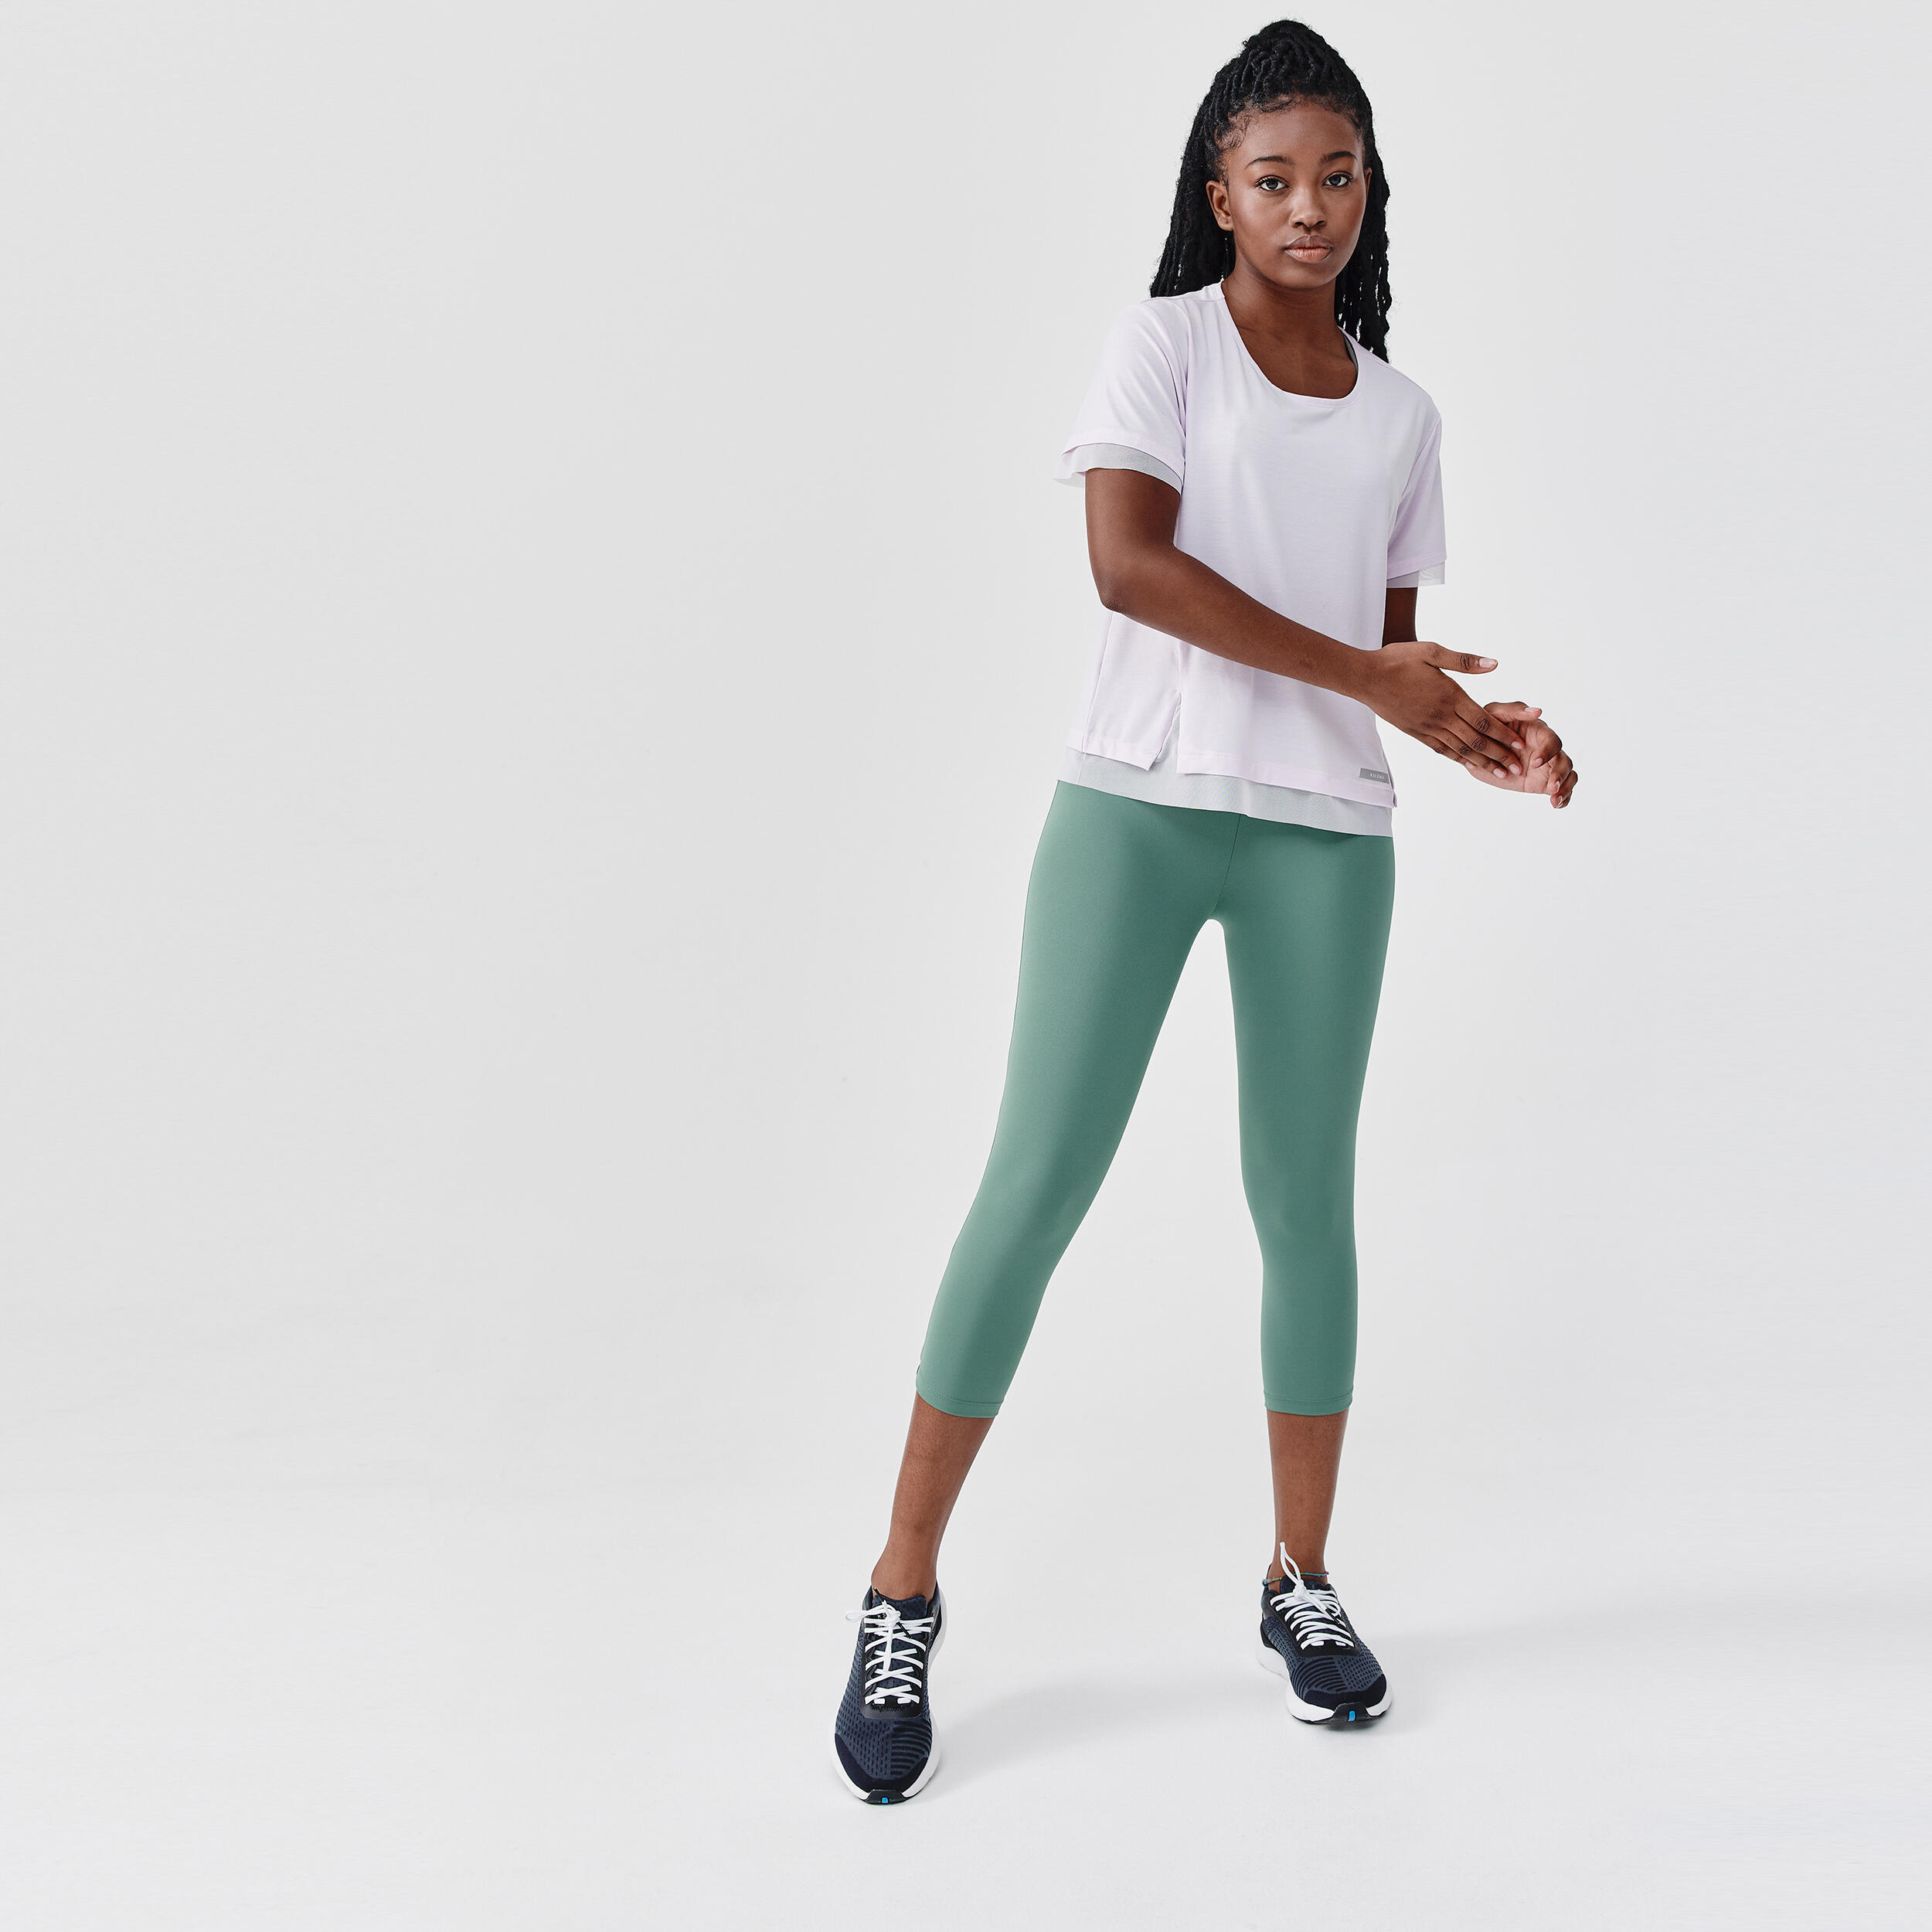 Fitness Mesh Sport Pocket Legging Femme| Alibaba.com